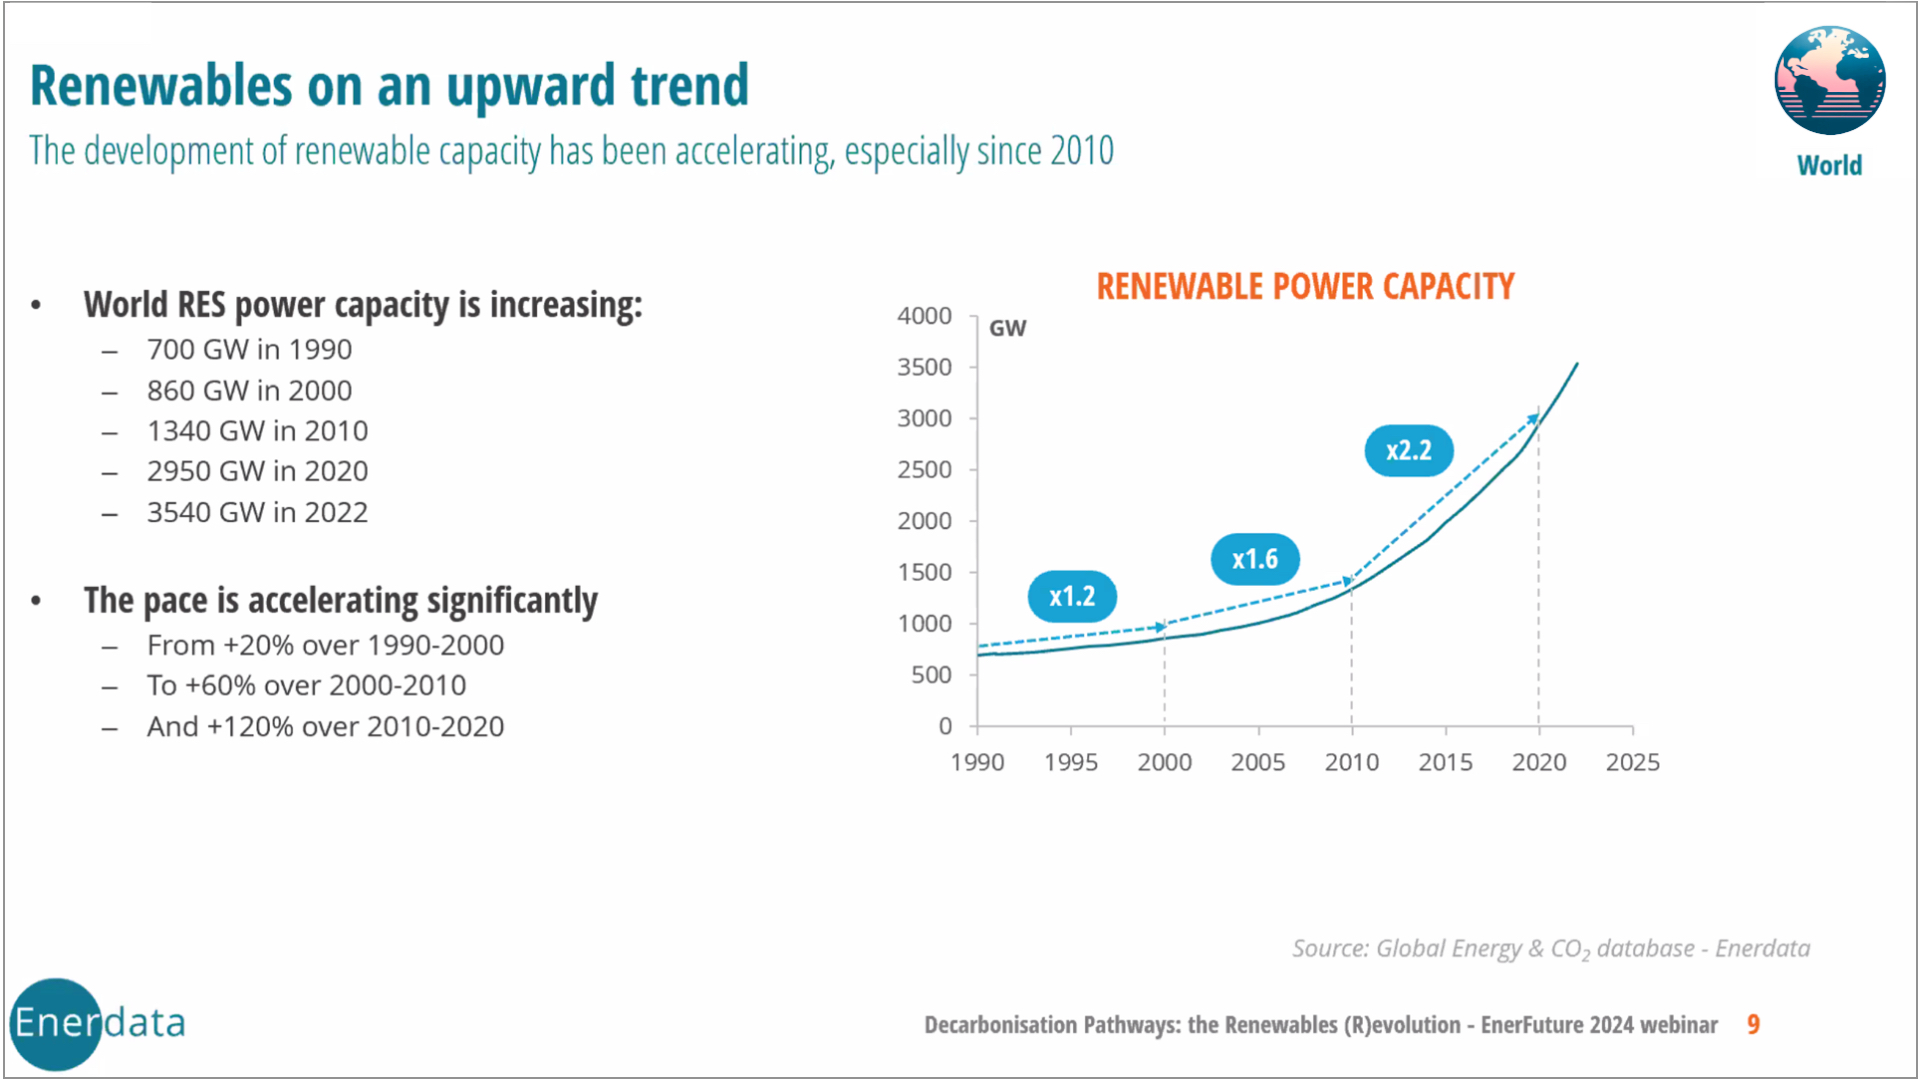 Renewables on an Upward Trend